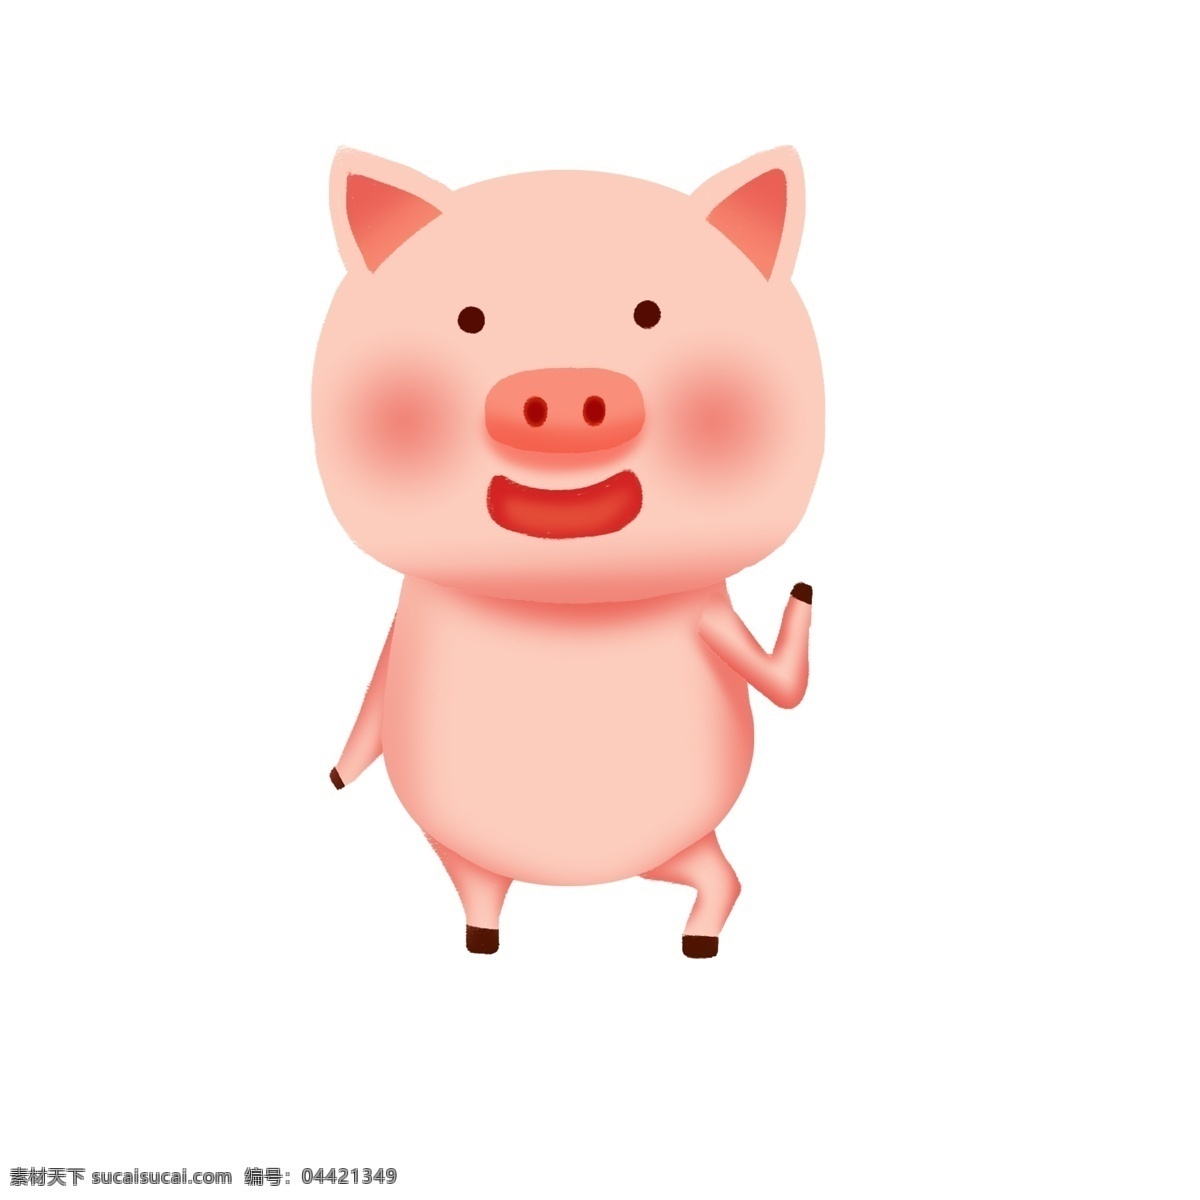 2019 猪年 粉色 系 卡通 手绘 立体 猪 卡通猪 猪宝宝 可爱猪宝宝 粉色系 卡通手绘 粉色系立体猪 可爱立体猪